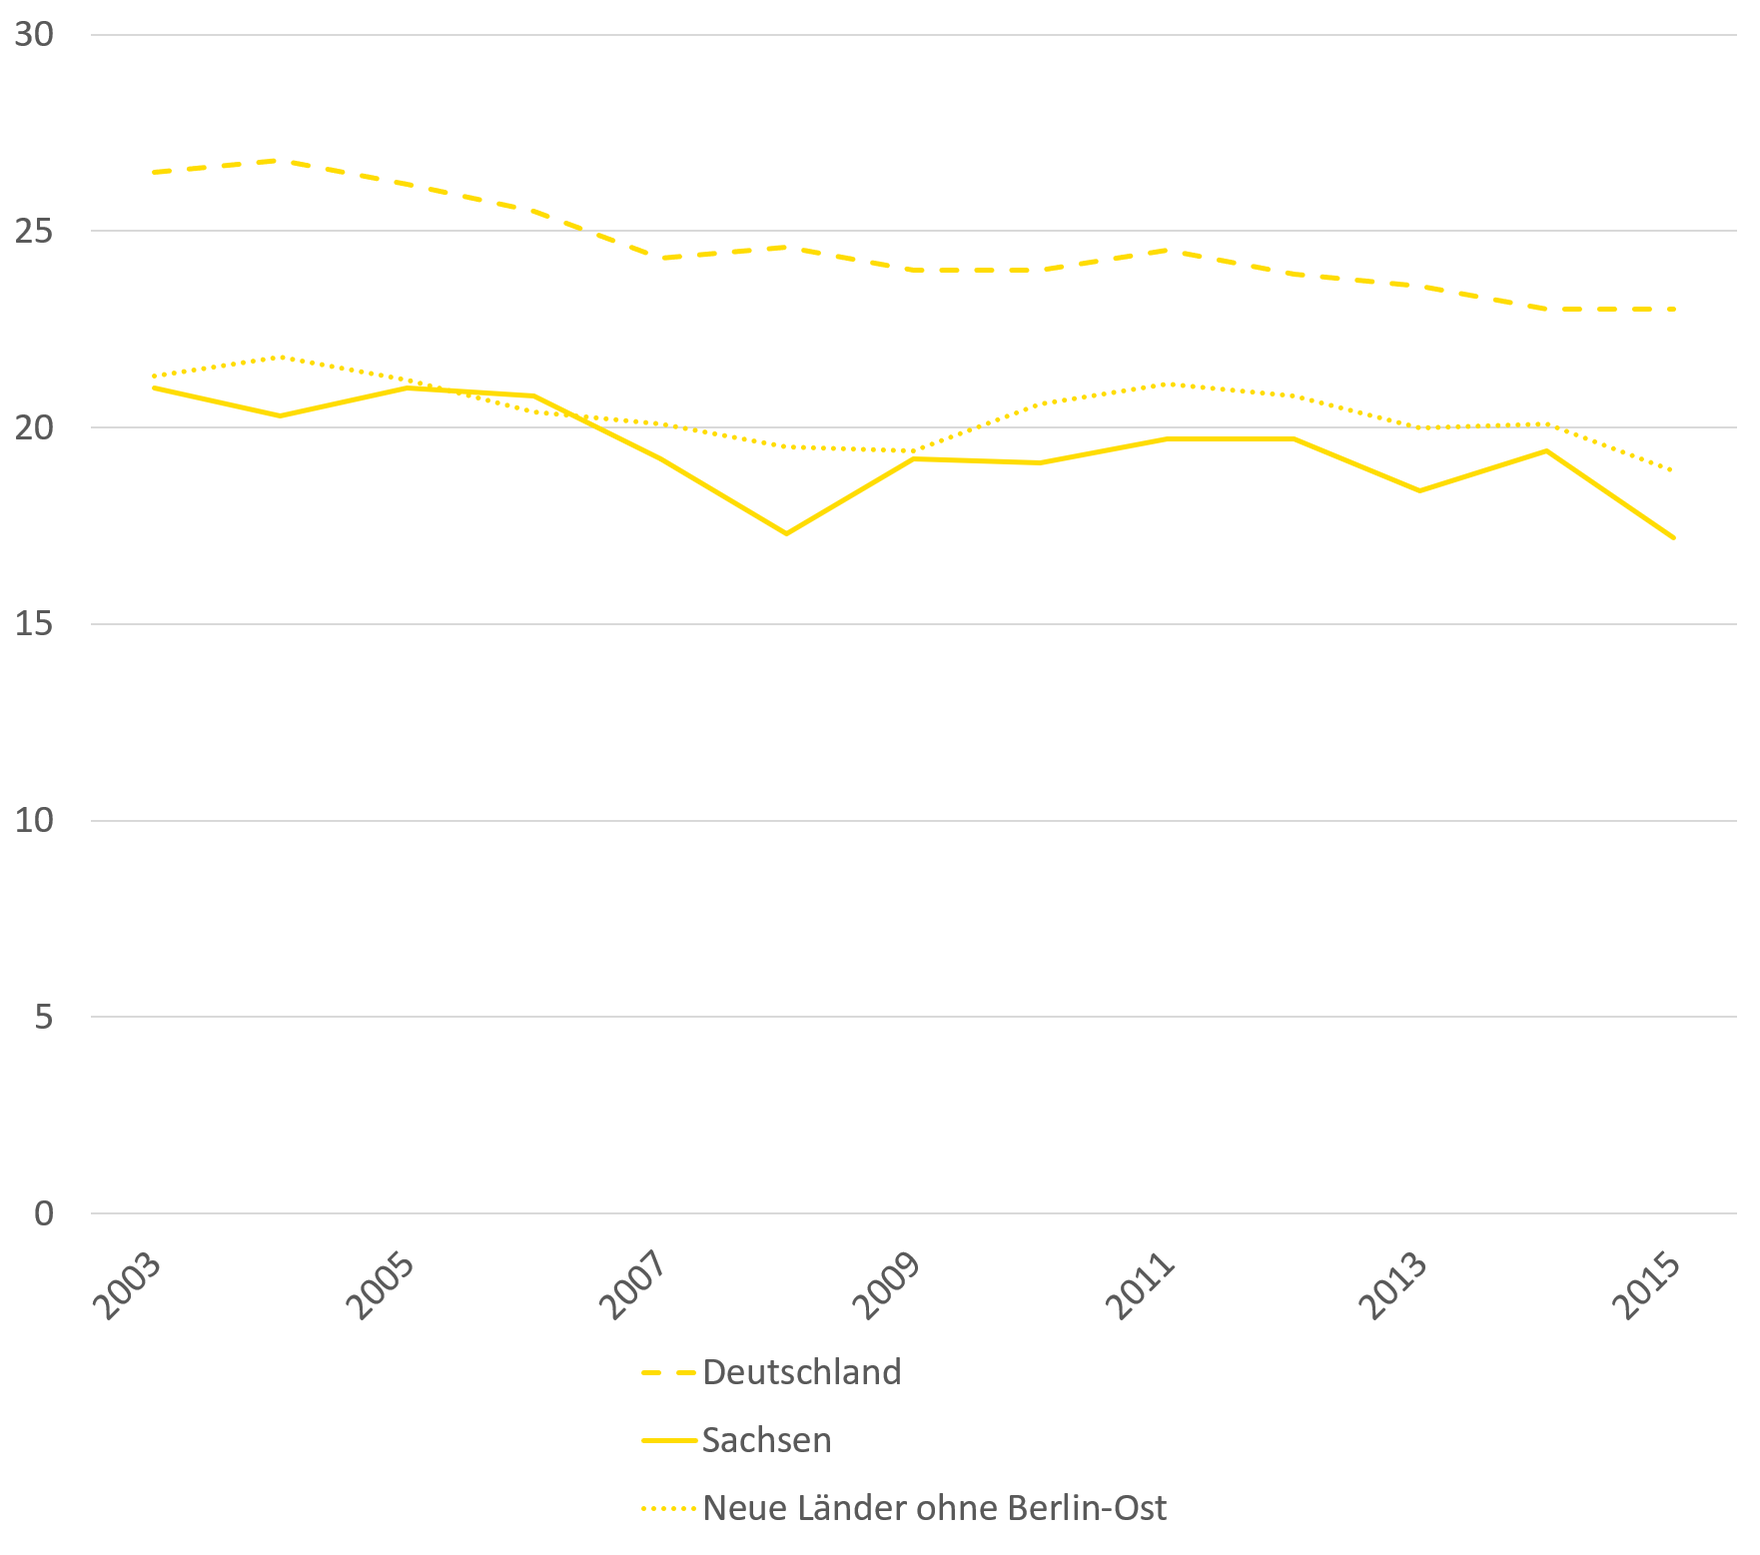 Die Mortalitätsrate von Brustkrebs in Sachsen und den neuen Bundesländern ohne Berlin-Ost liegt unter dem bundesweiten Durchschnitt und nimmt von 2003 bis 2015 leicht ab.